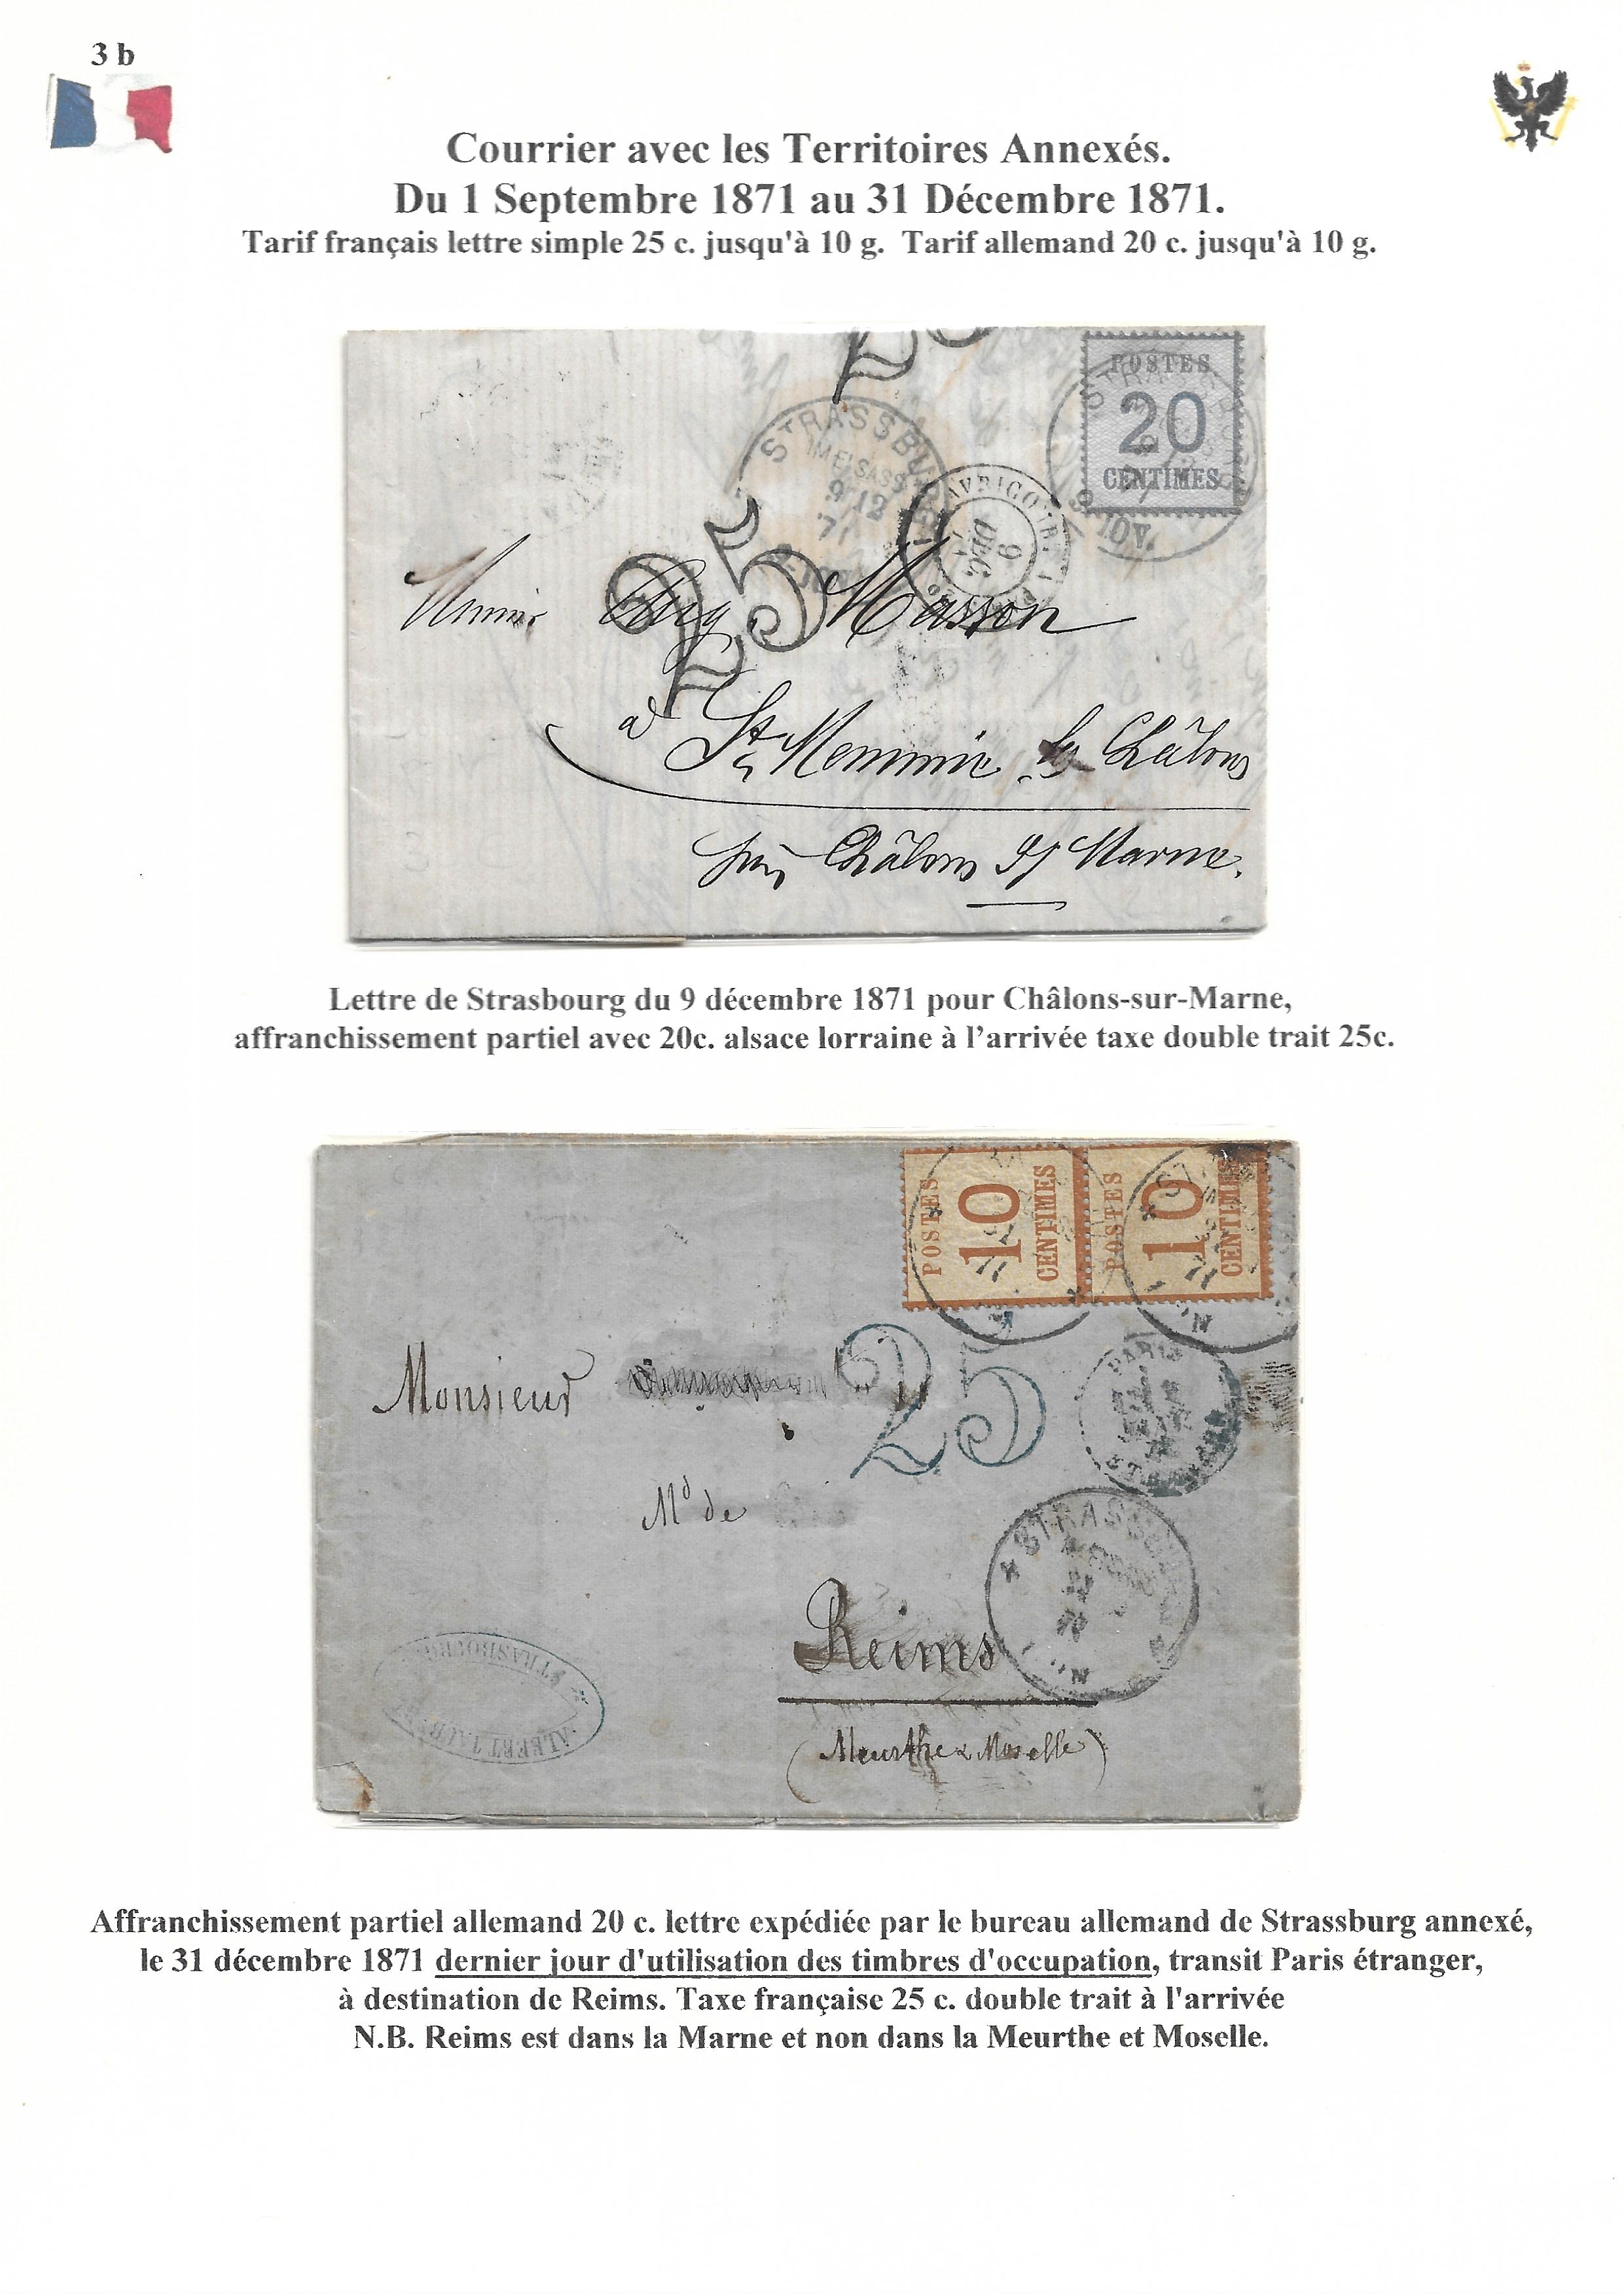 Occupation Prussienne dans la Marne 1870-1872 : Cons��quences sur les relations postales p. 38